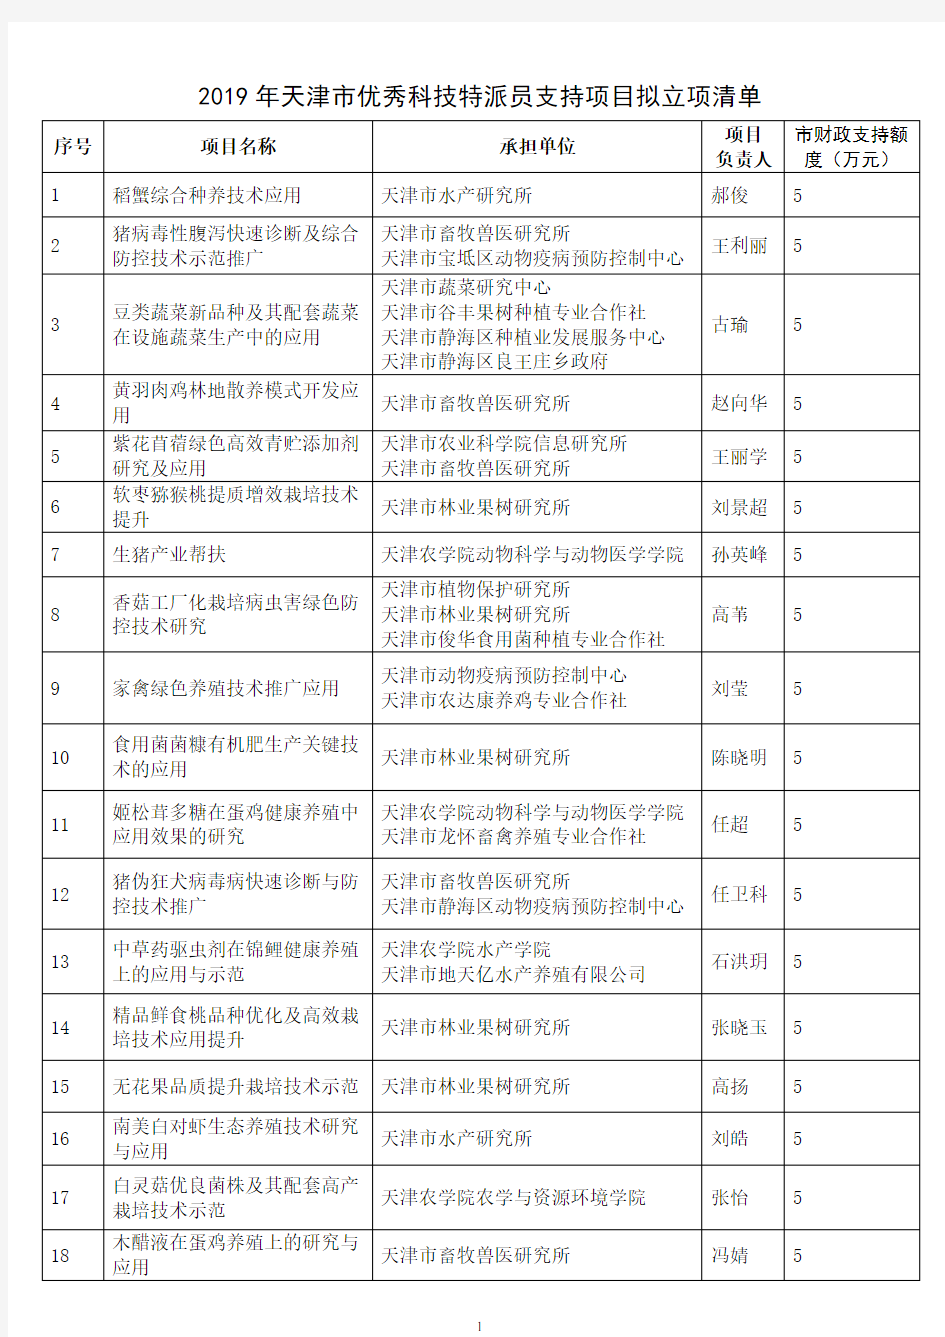 2019年天津市优秀科技特派员支持项目拟立项清单